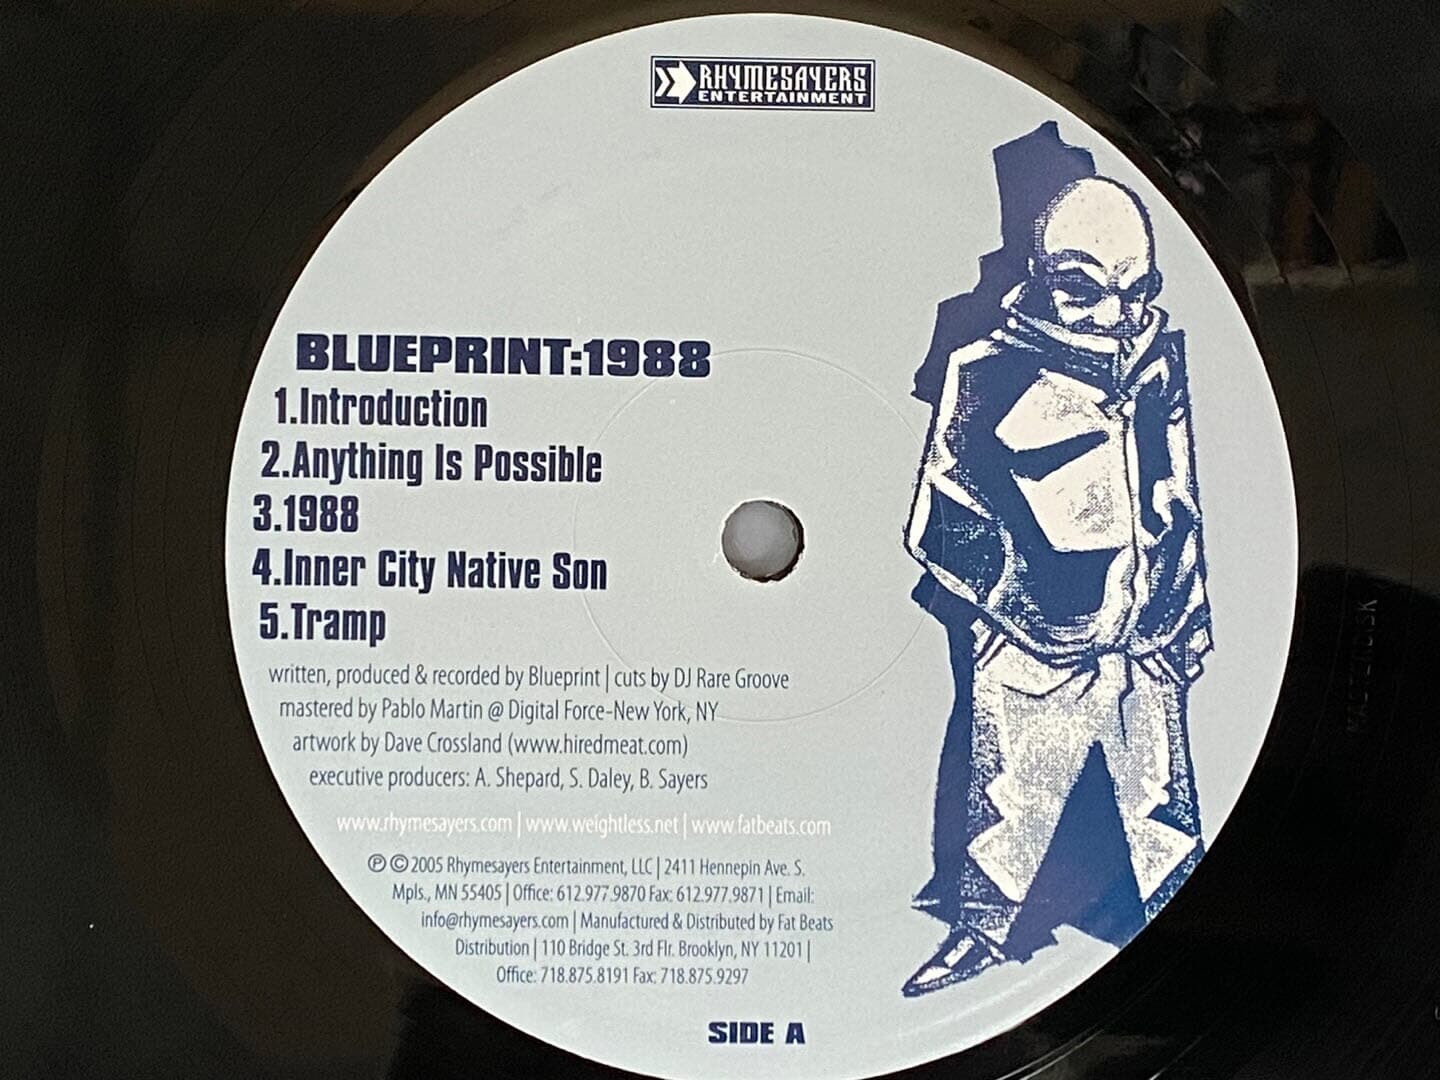 [LP] 블루프린터 - Blueprint - 1988 2Lps [싸인반] [U.S반]